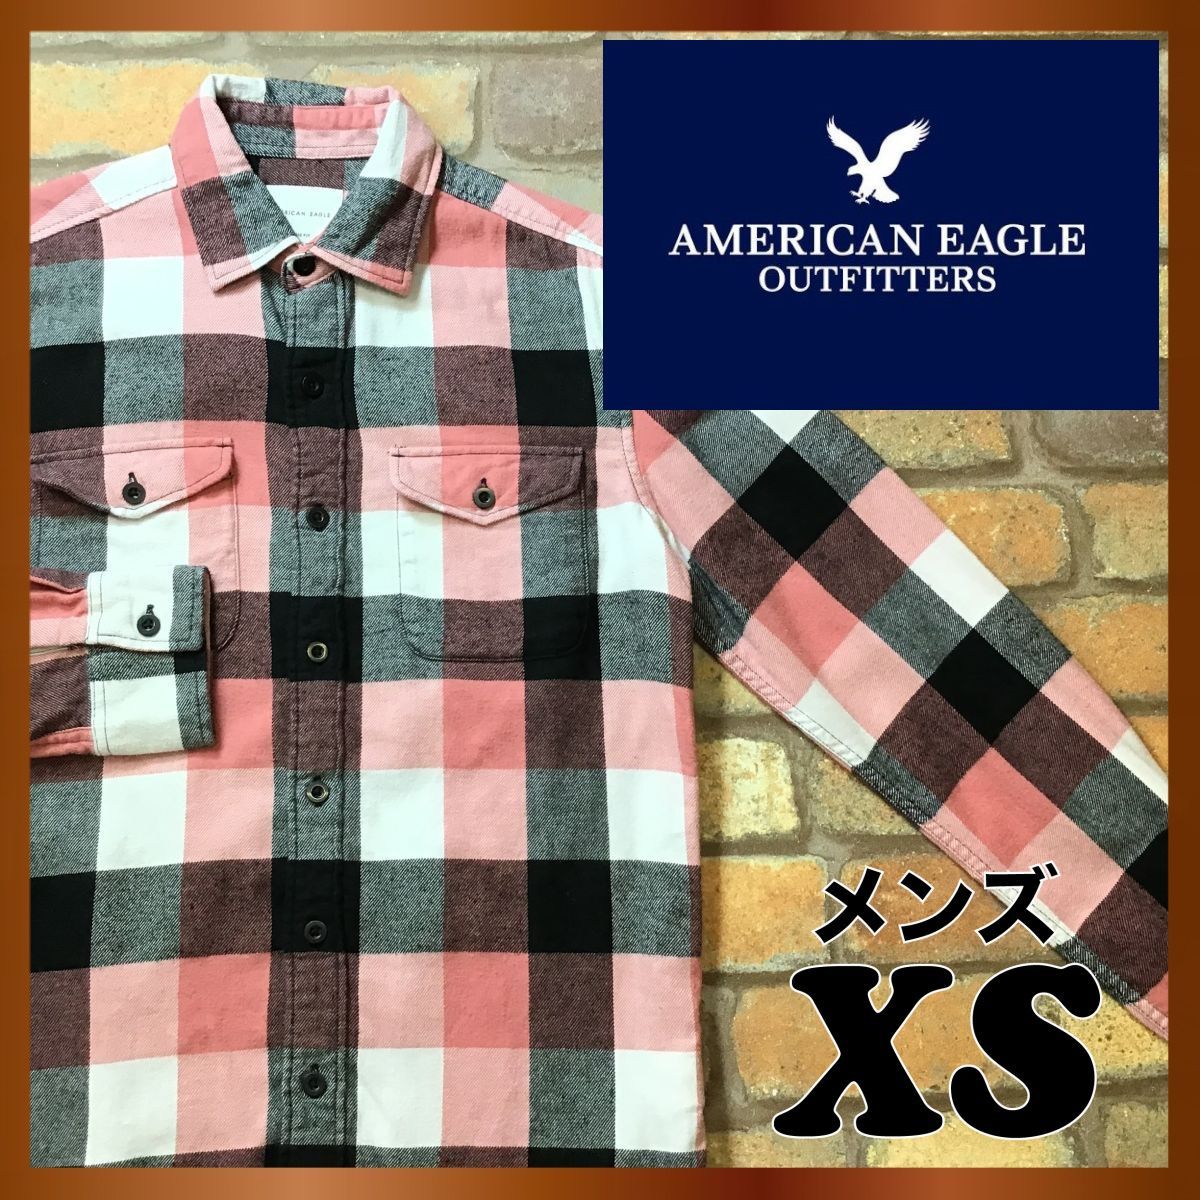 American eagle　アメリカンイーグル　ネルシャツ　チェック　メンズ